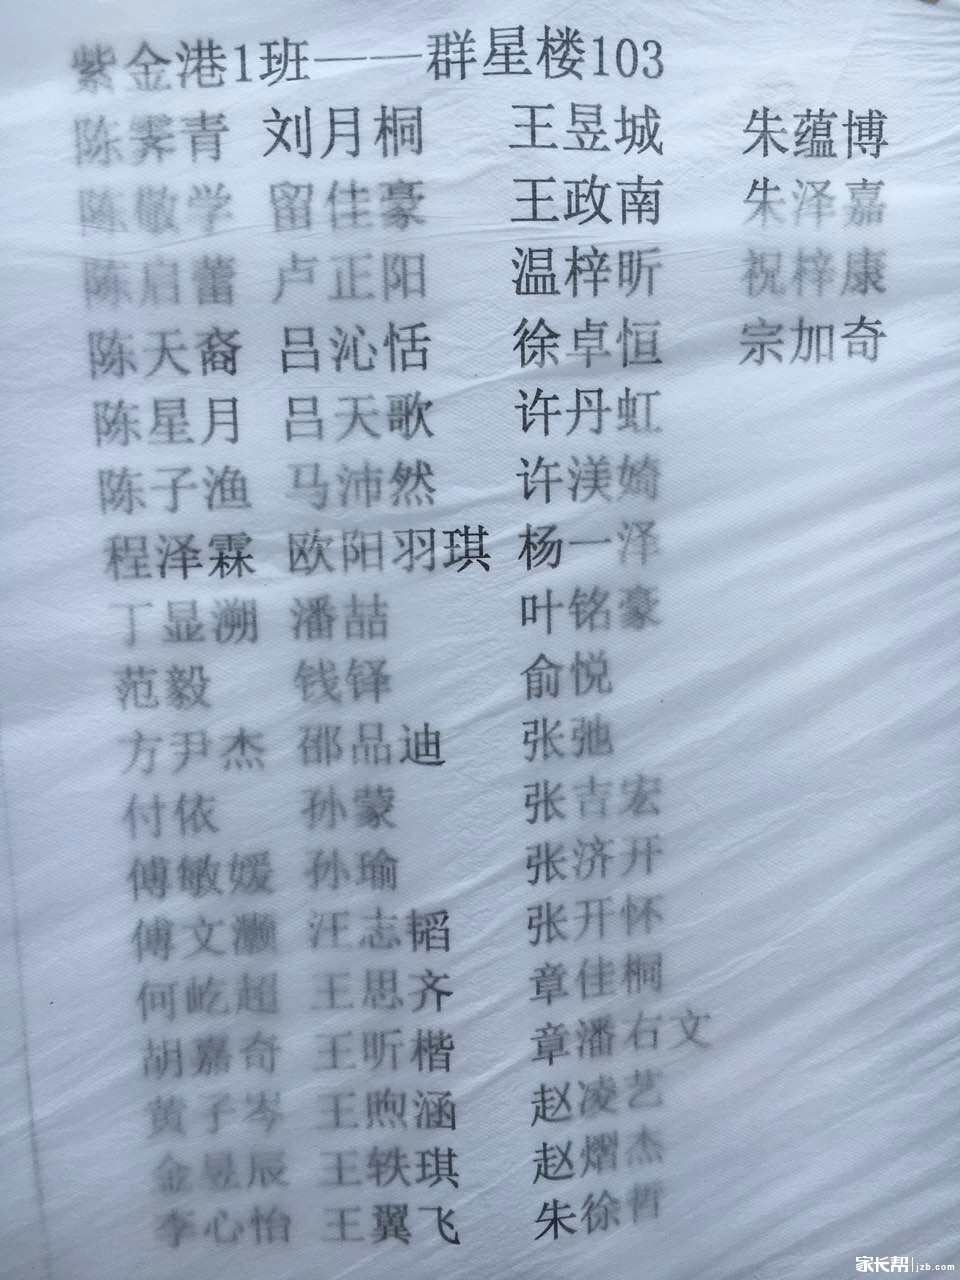 2016年杭州学军中学紫金港校区实验班分班名单1